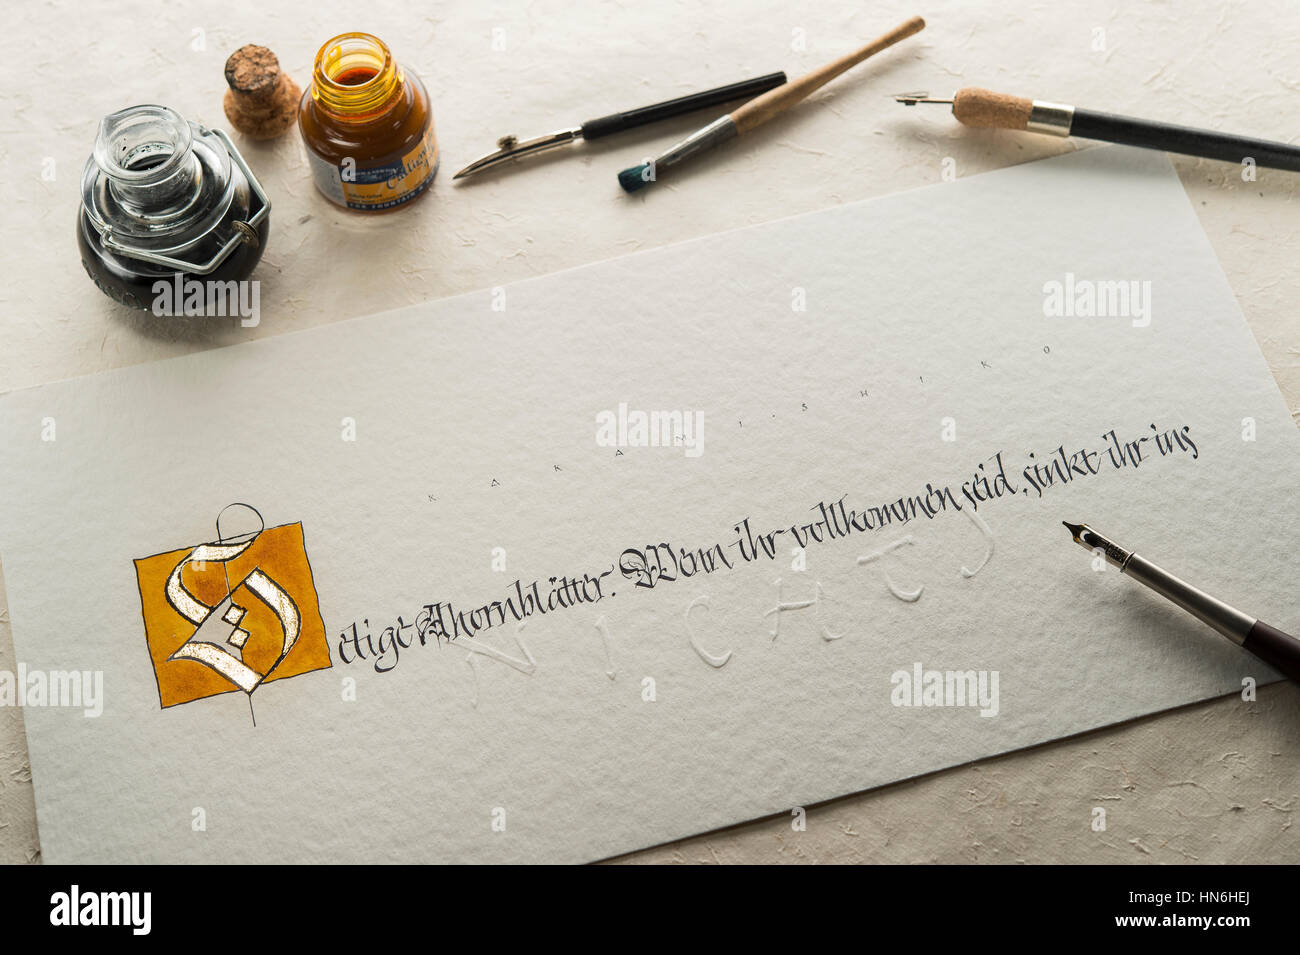 Studio de calligraphie, part écrit le texte avec un stylo et plume, lettre S de poudre d'or et de l'écrit sur papier torchon Banque D'Images